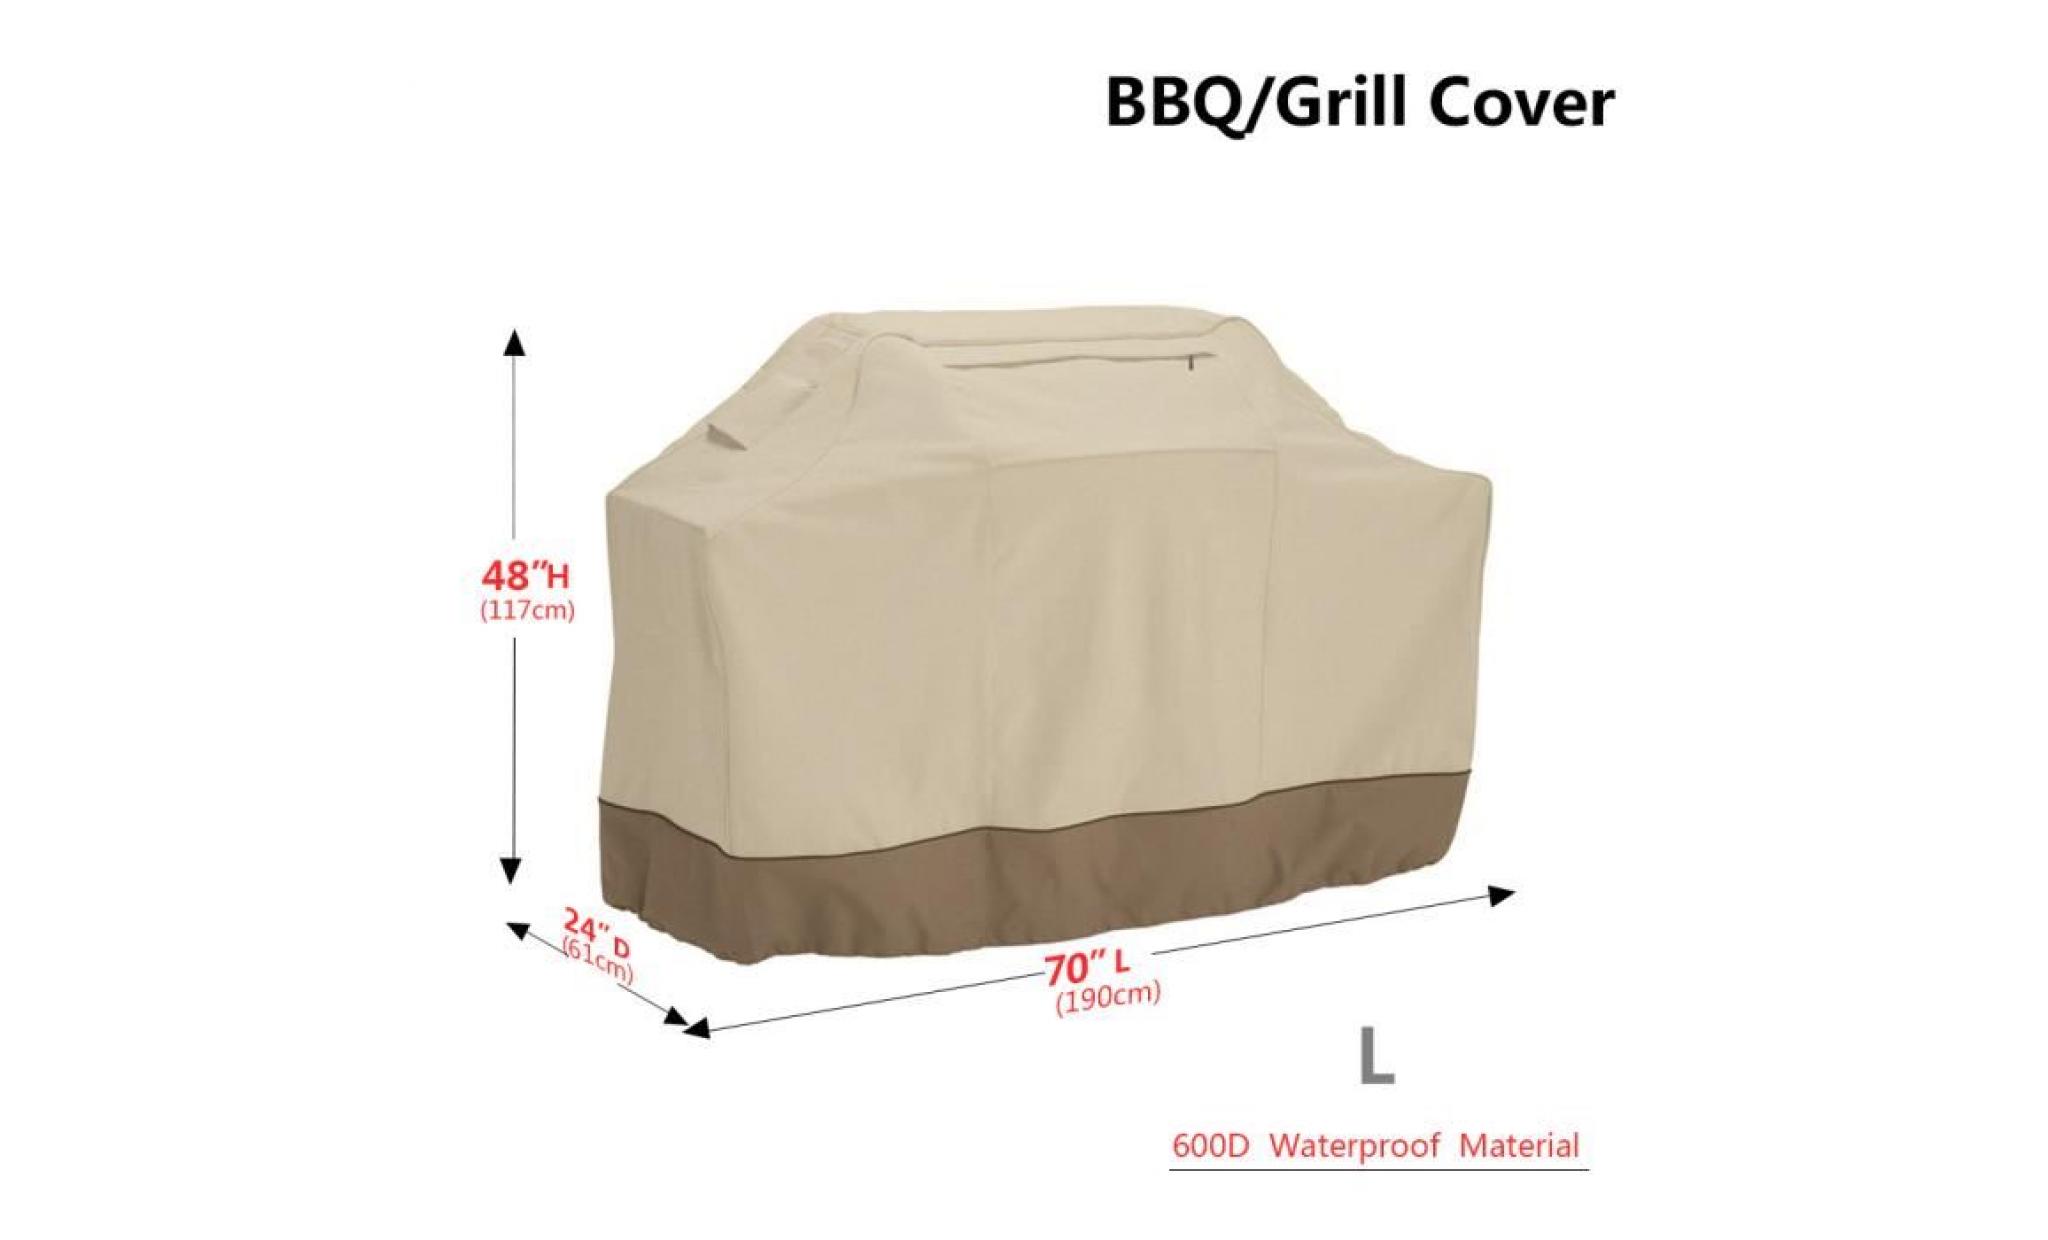 620d etanche impeméable housse bâche couverture barbecue extérieur protecteur de four beige 190*61*117cm